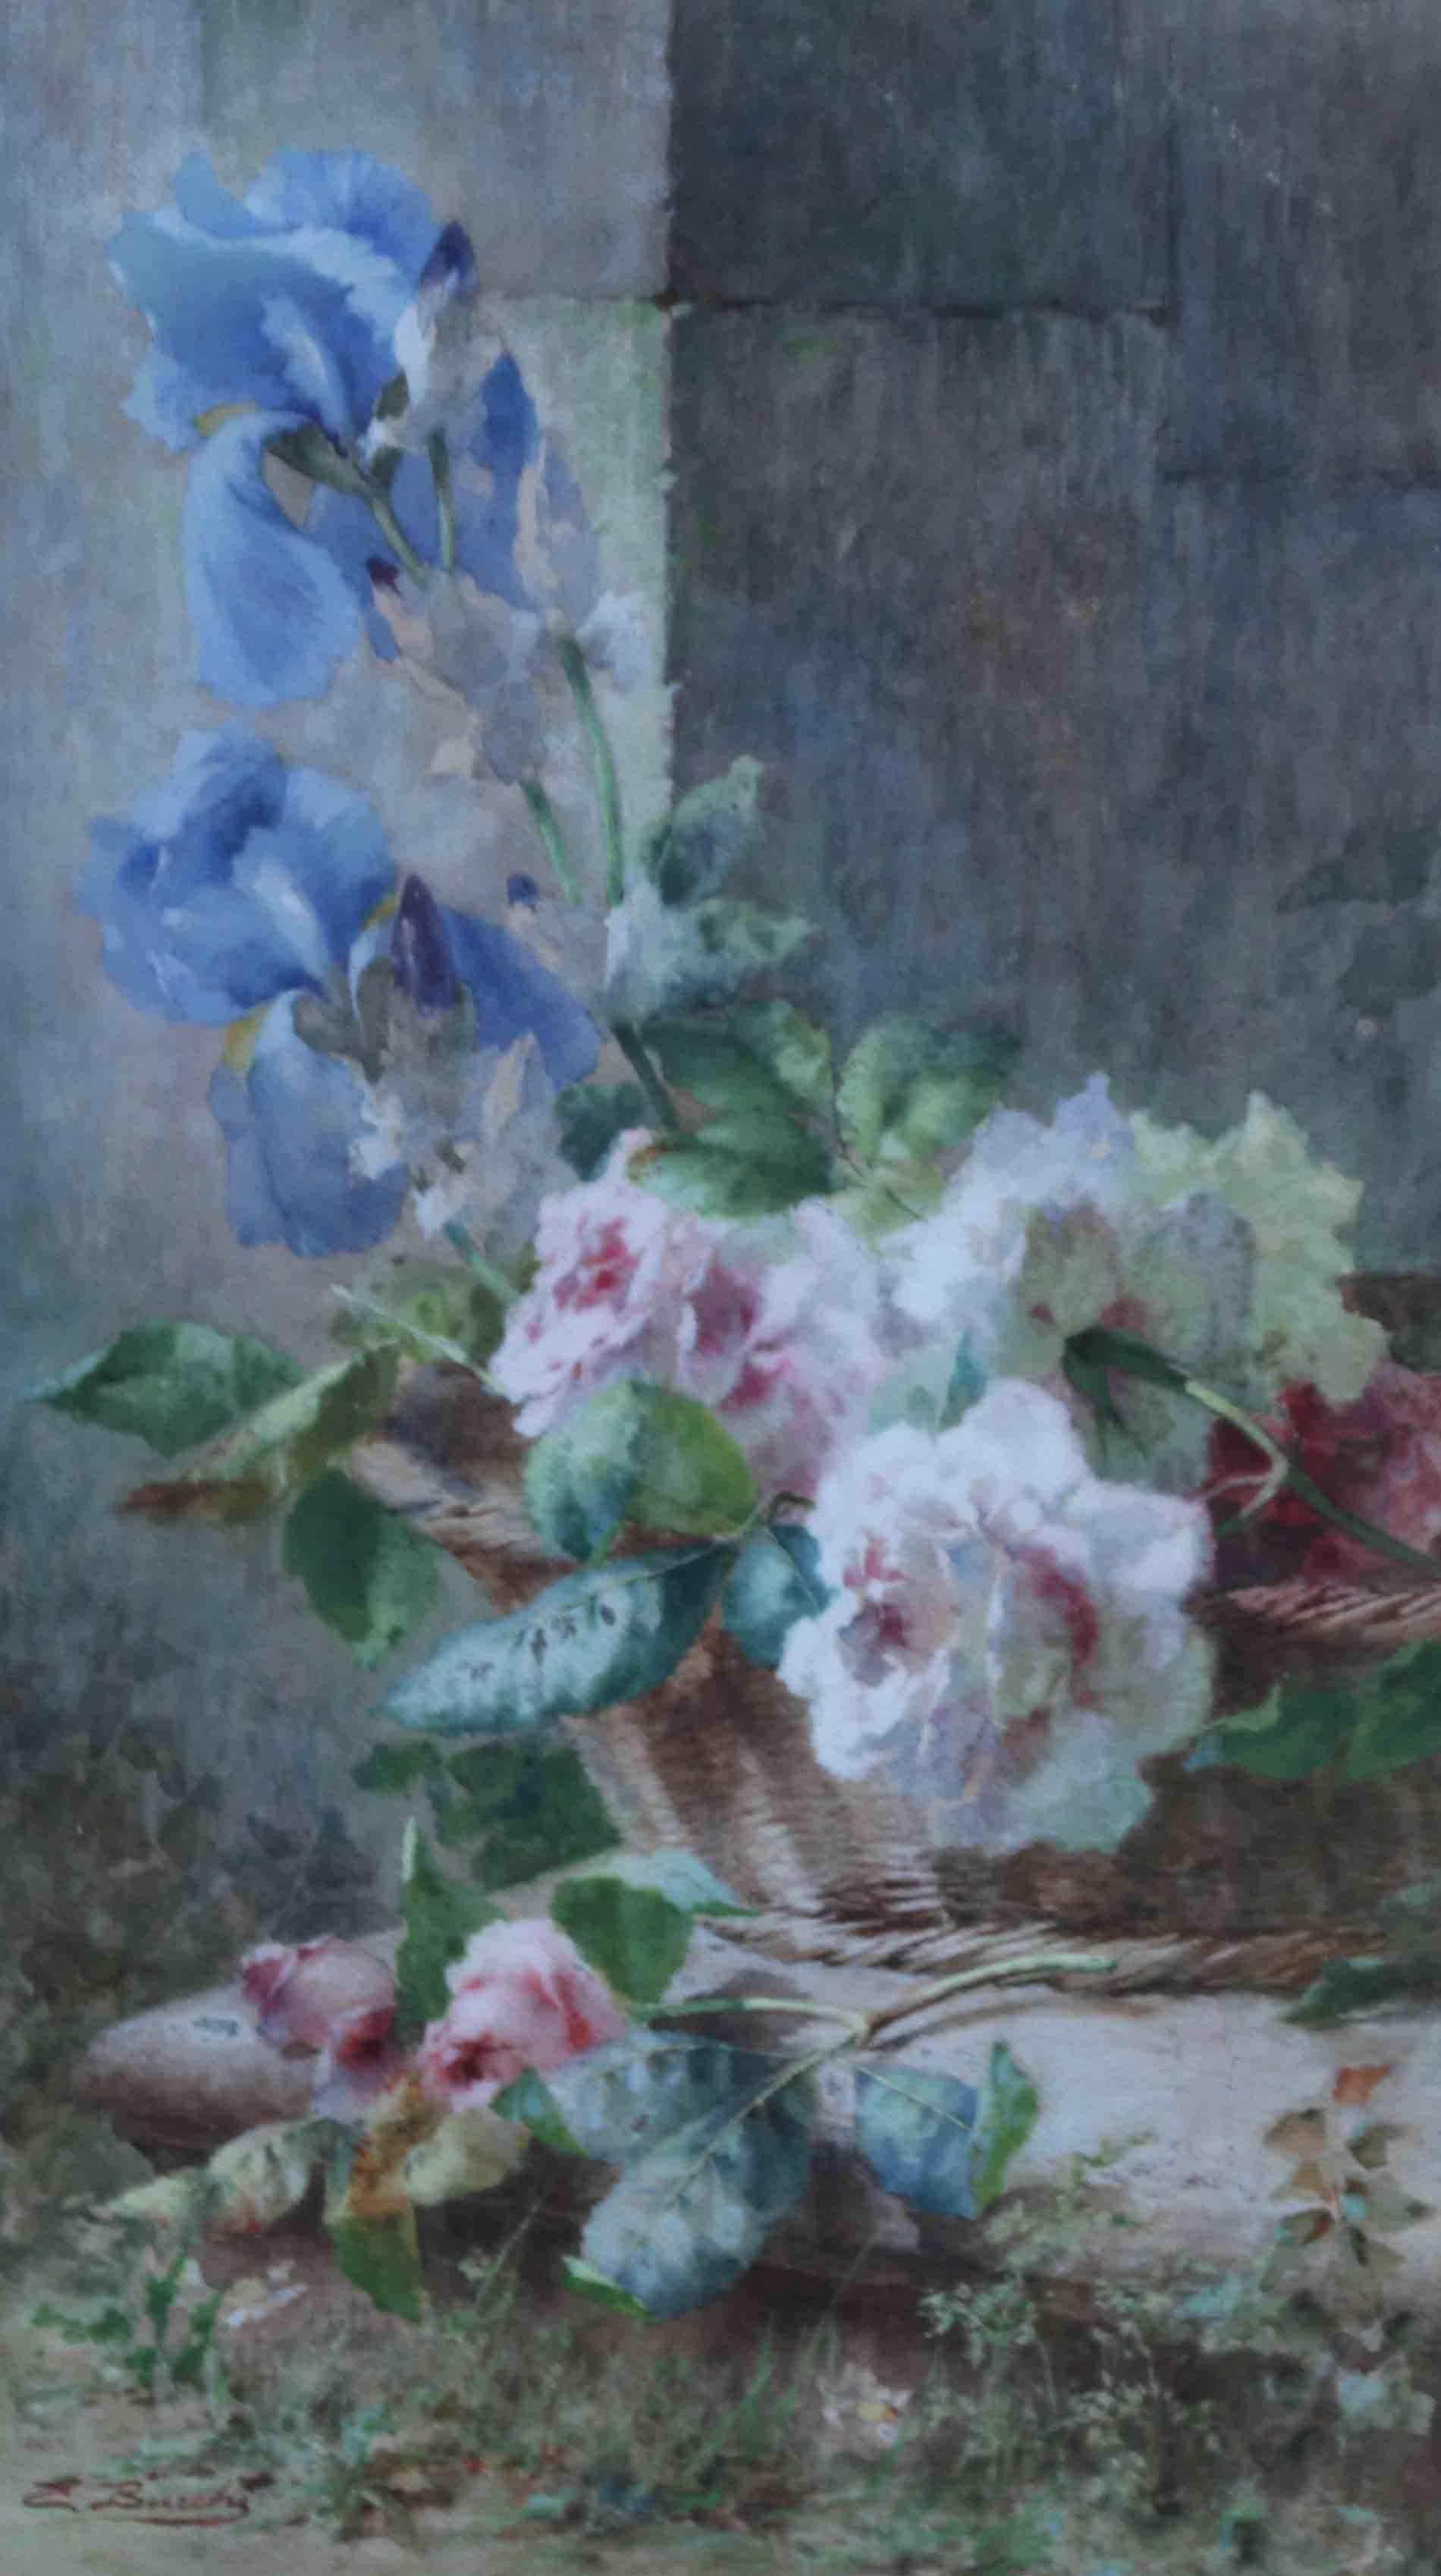 Irisen und Rosen in Korb - Italienisches Blumenstillleben des 19. Jahrhunderts – Art von Ermocrate Bucchi